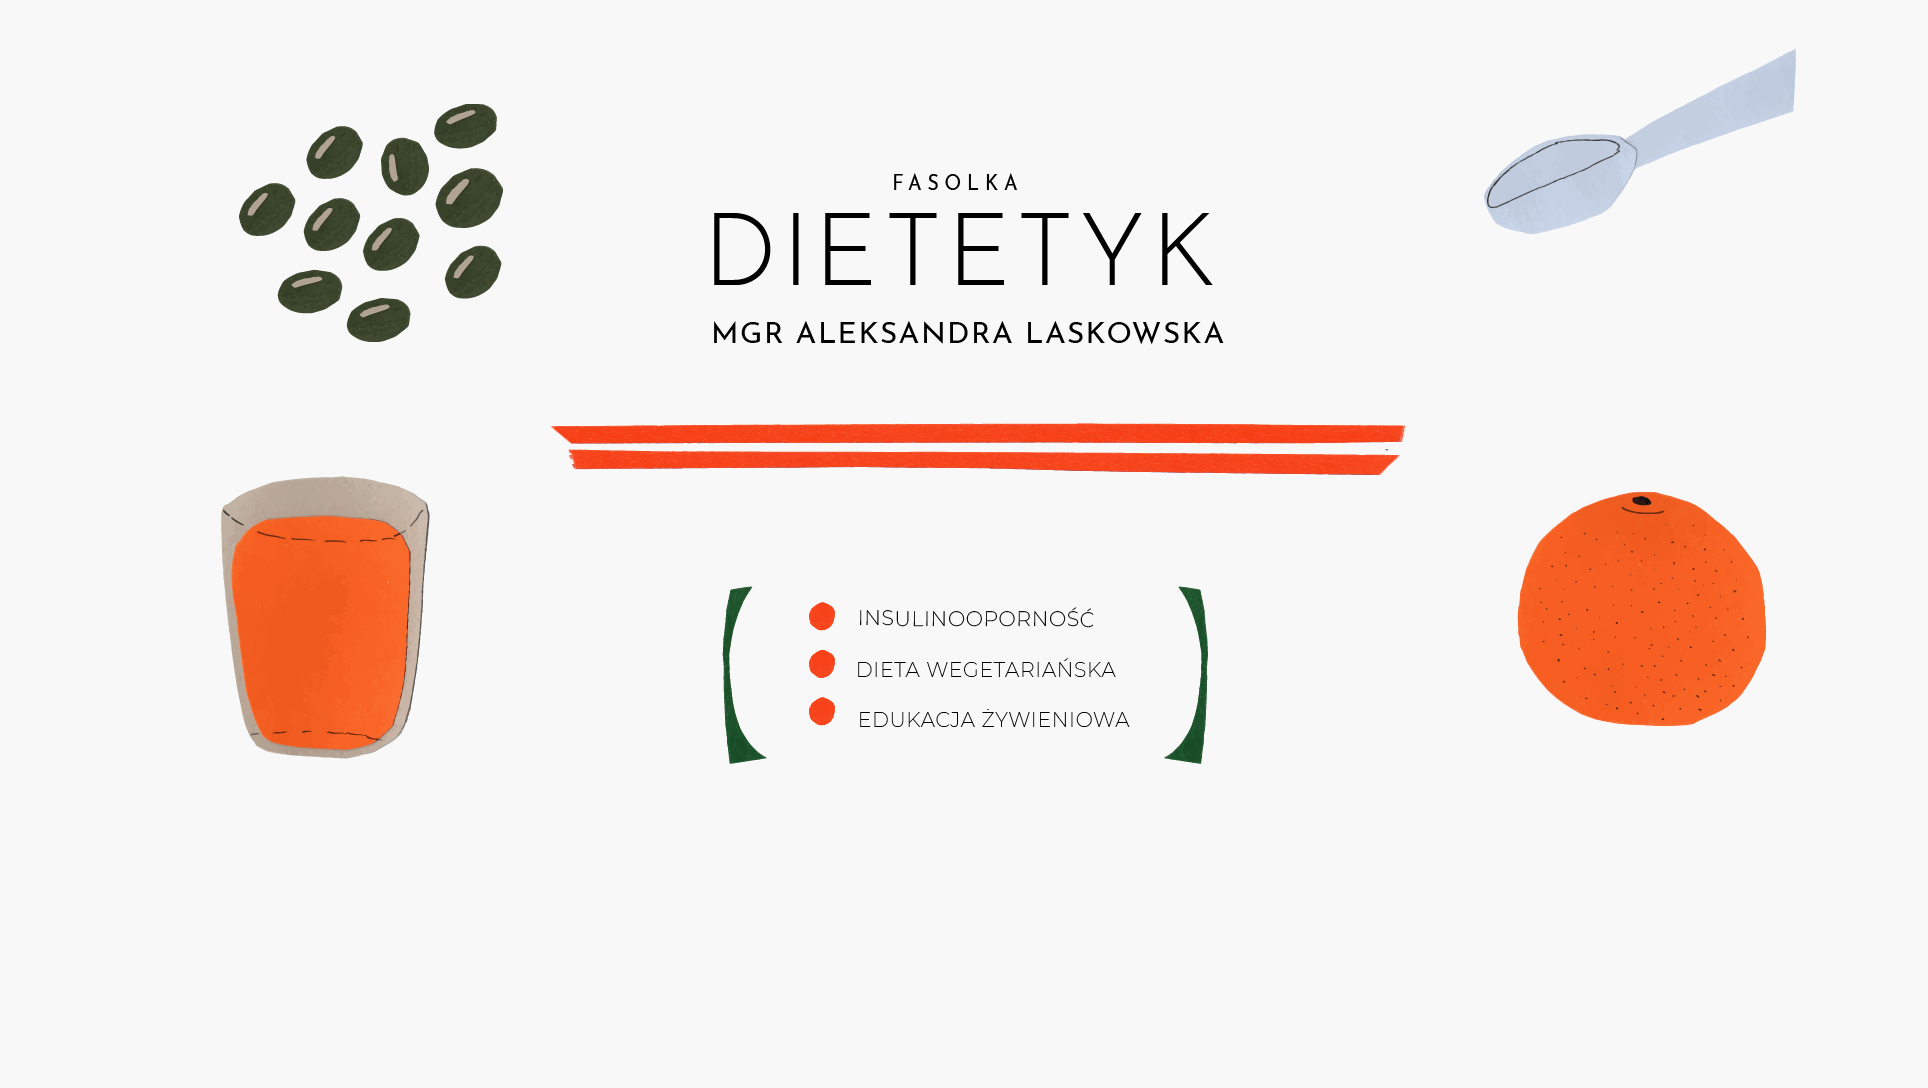 strona główna mobilna dietetyk Aleksandra Laskowska dietetyk, insulinooporność, dieta wegetariańska, edukacja żywieniowa